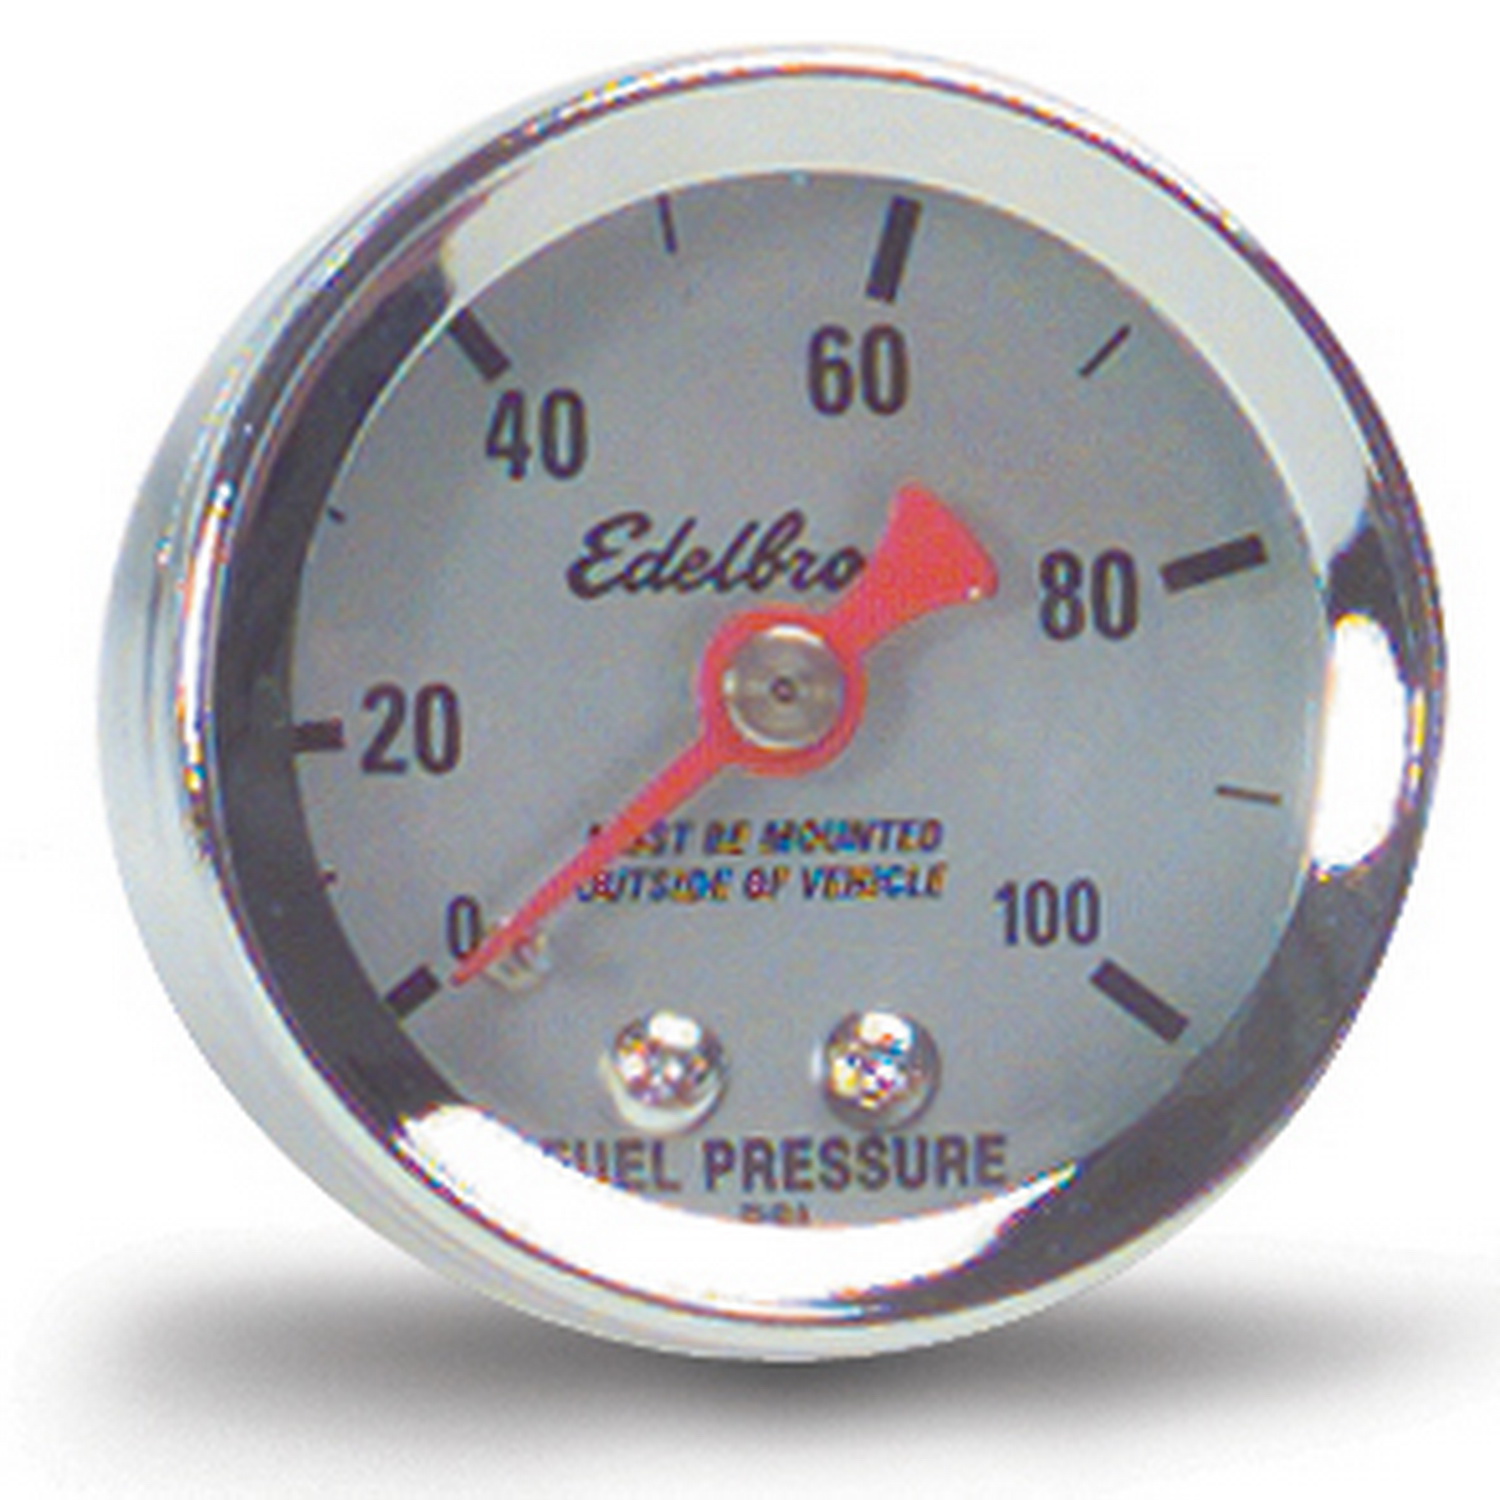 Edelbrock Fuel Pressure Gauge 1 1/2in. (0-100 Psi), Part# 73825